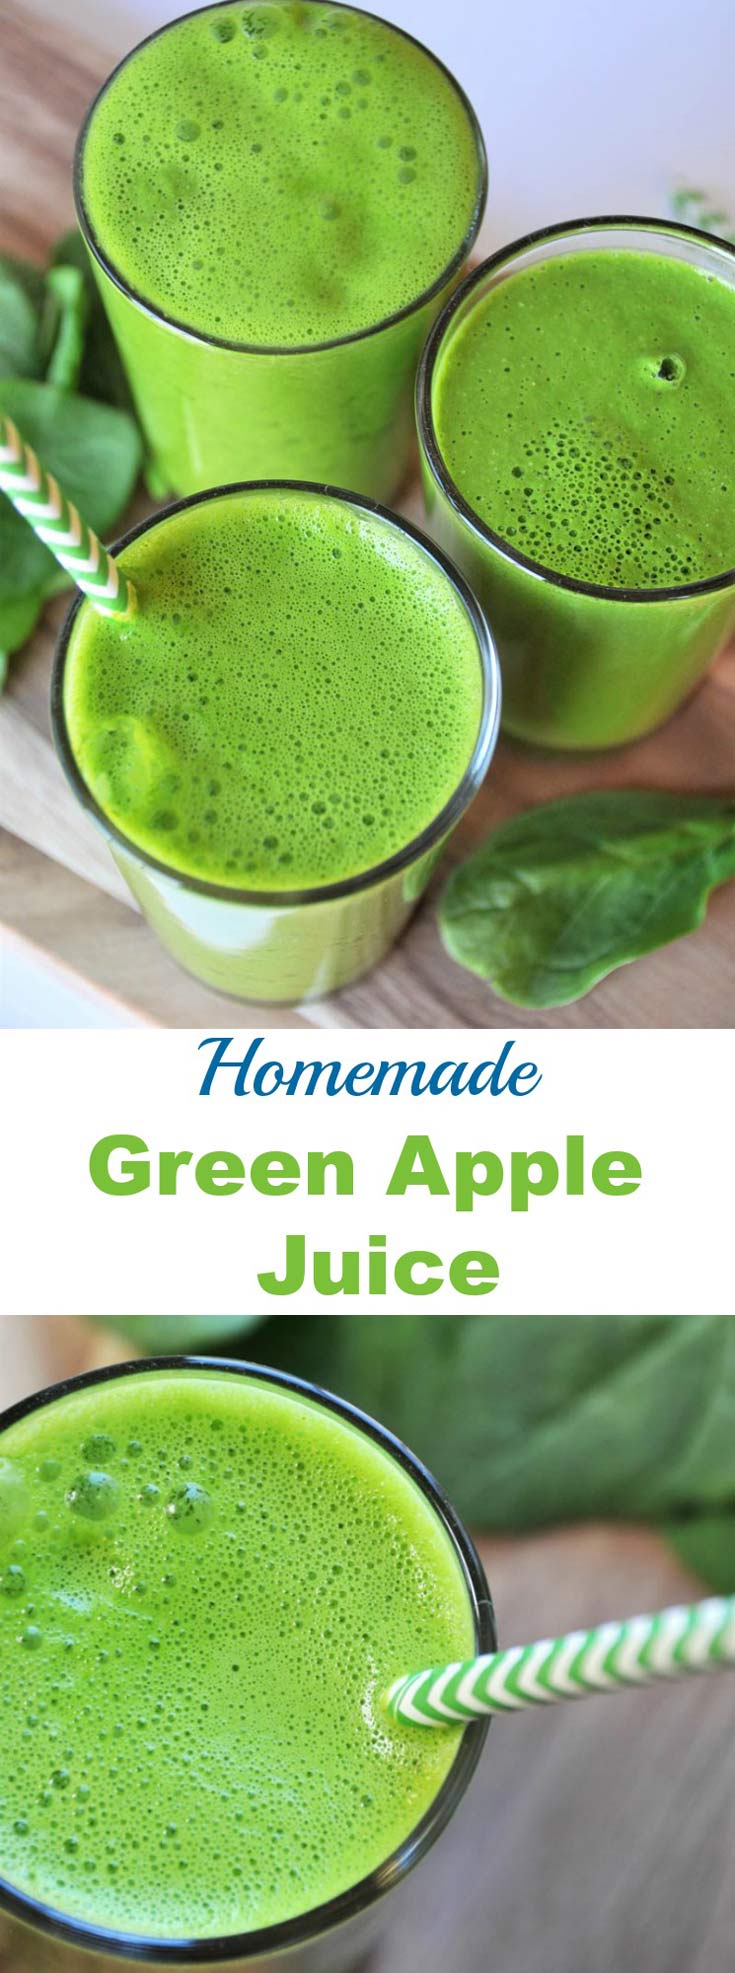 Zumo verde casero de 5 ingredientes con espinacas, manzana, limón y cúrcuma. Una forma sana y sabrosa de tomar tus verduras.